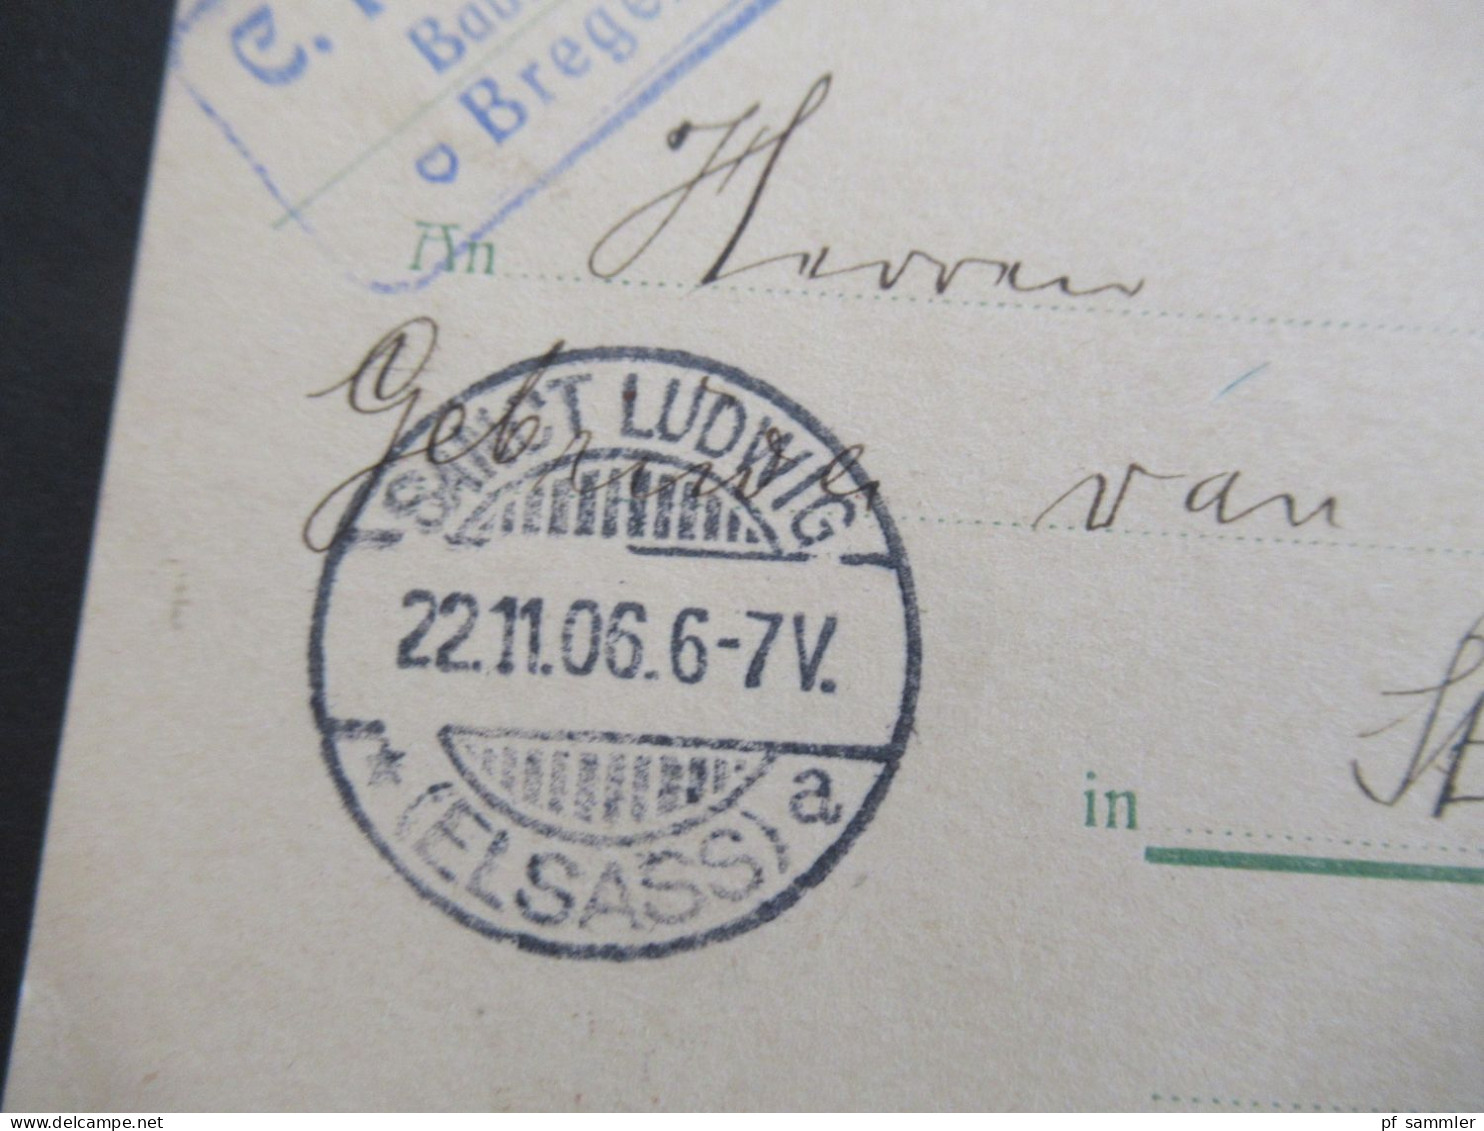 Österreich 1906 GA Auslandsverwendung Bregenz Und Ank. Stp. Sanct Ludwig Elsass Abs. C. Rhomberg Baumeister Bregenz - Cartes Postales